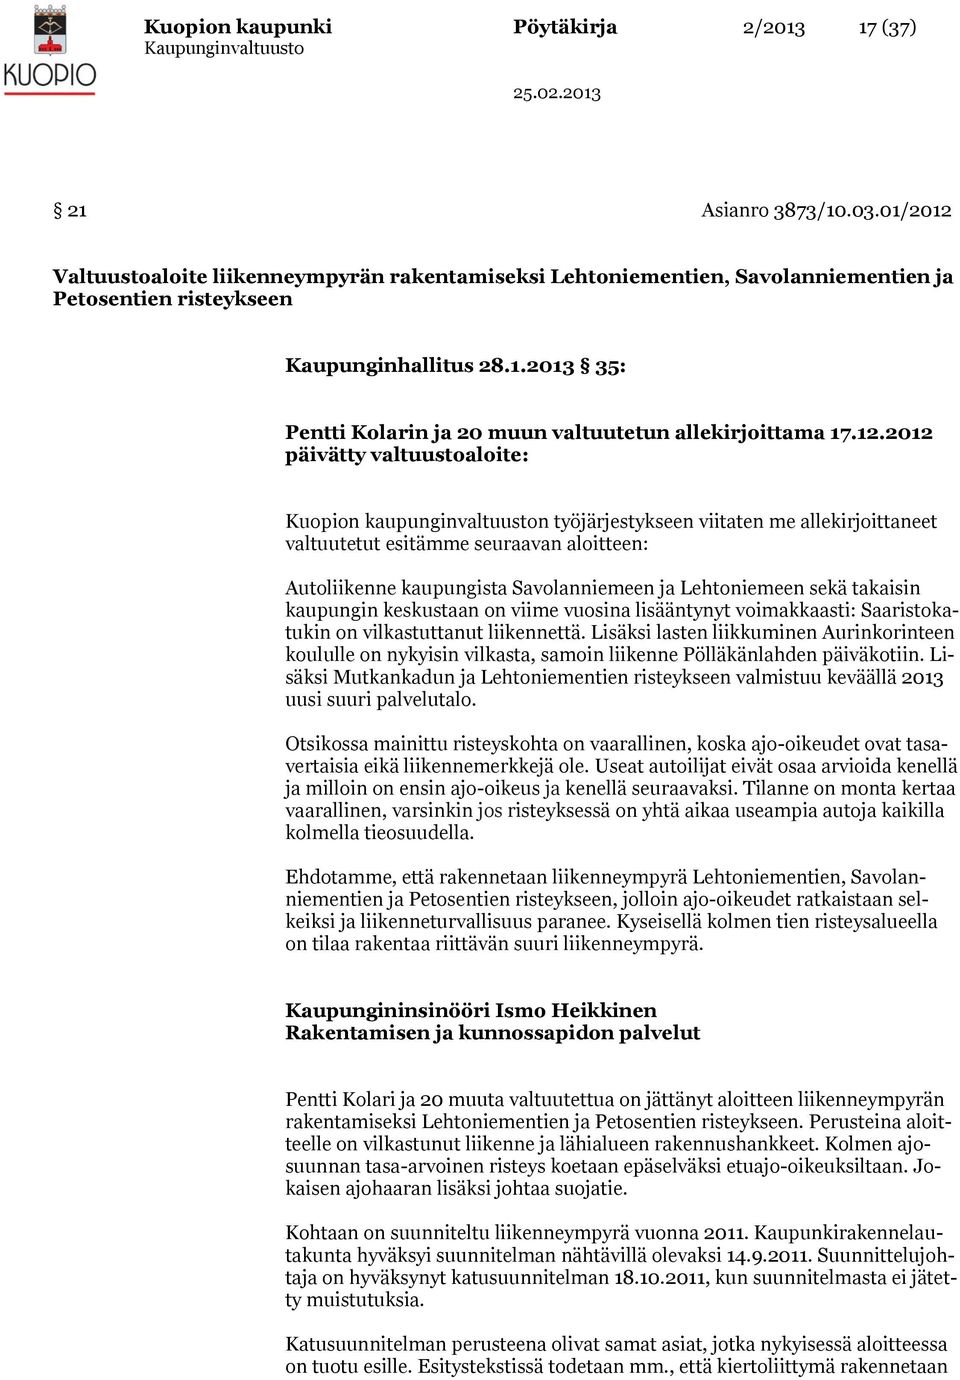 12.2012 päivätty valtuustoaloite: Kuopion kaupunginvaltuuston työjärjestykseen viitaten me allekirjoittaneet valtuutetut esitämme seuraavan aloitteen: Autoliikenne kaupungista Savolanniemeen ja